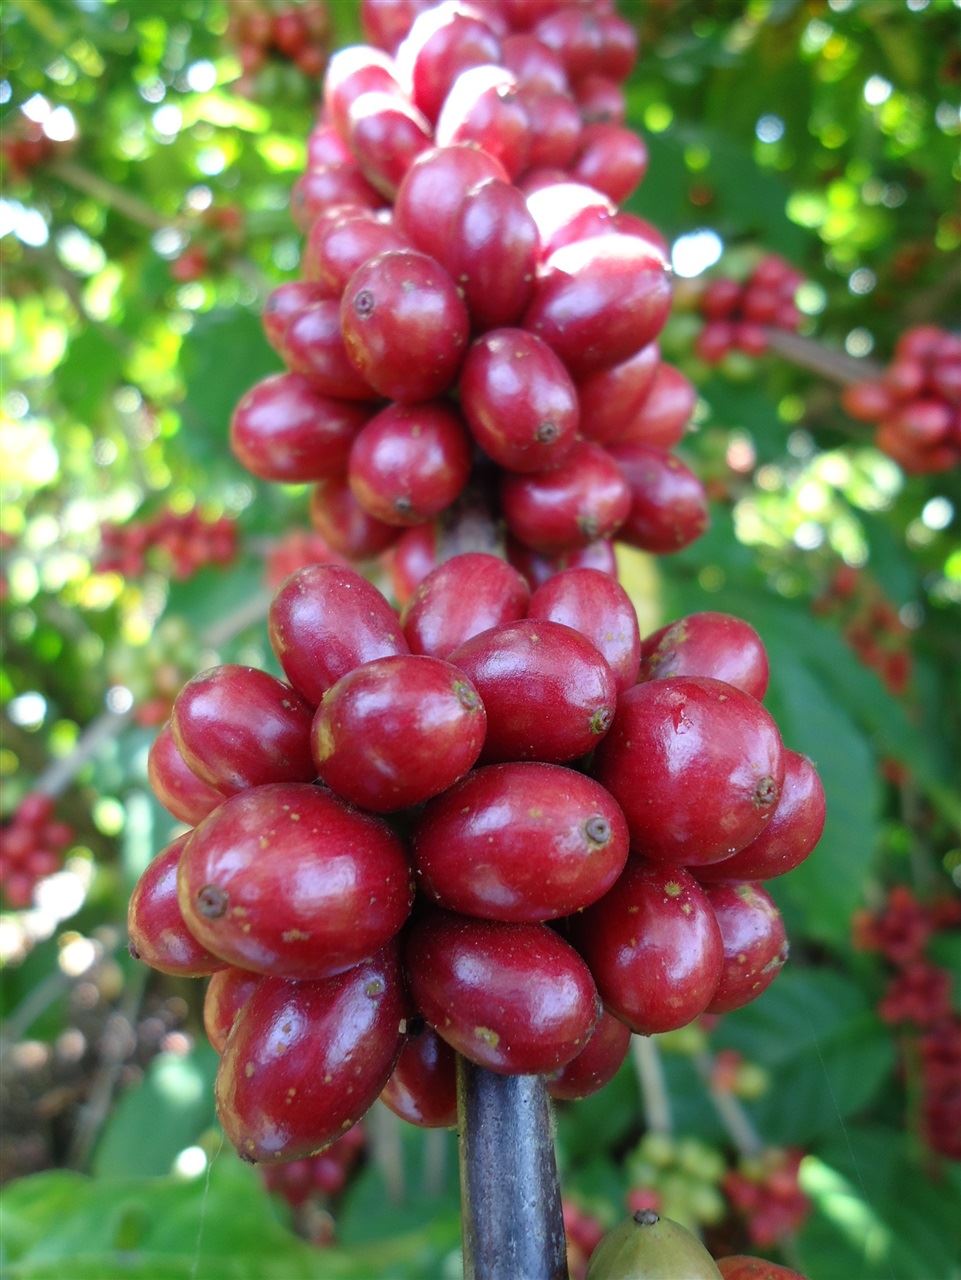 Preço do café conilon na região de Cacoal RO está há três semanas